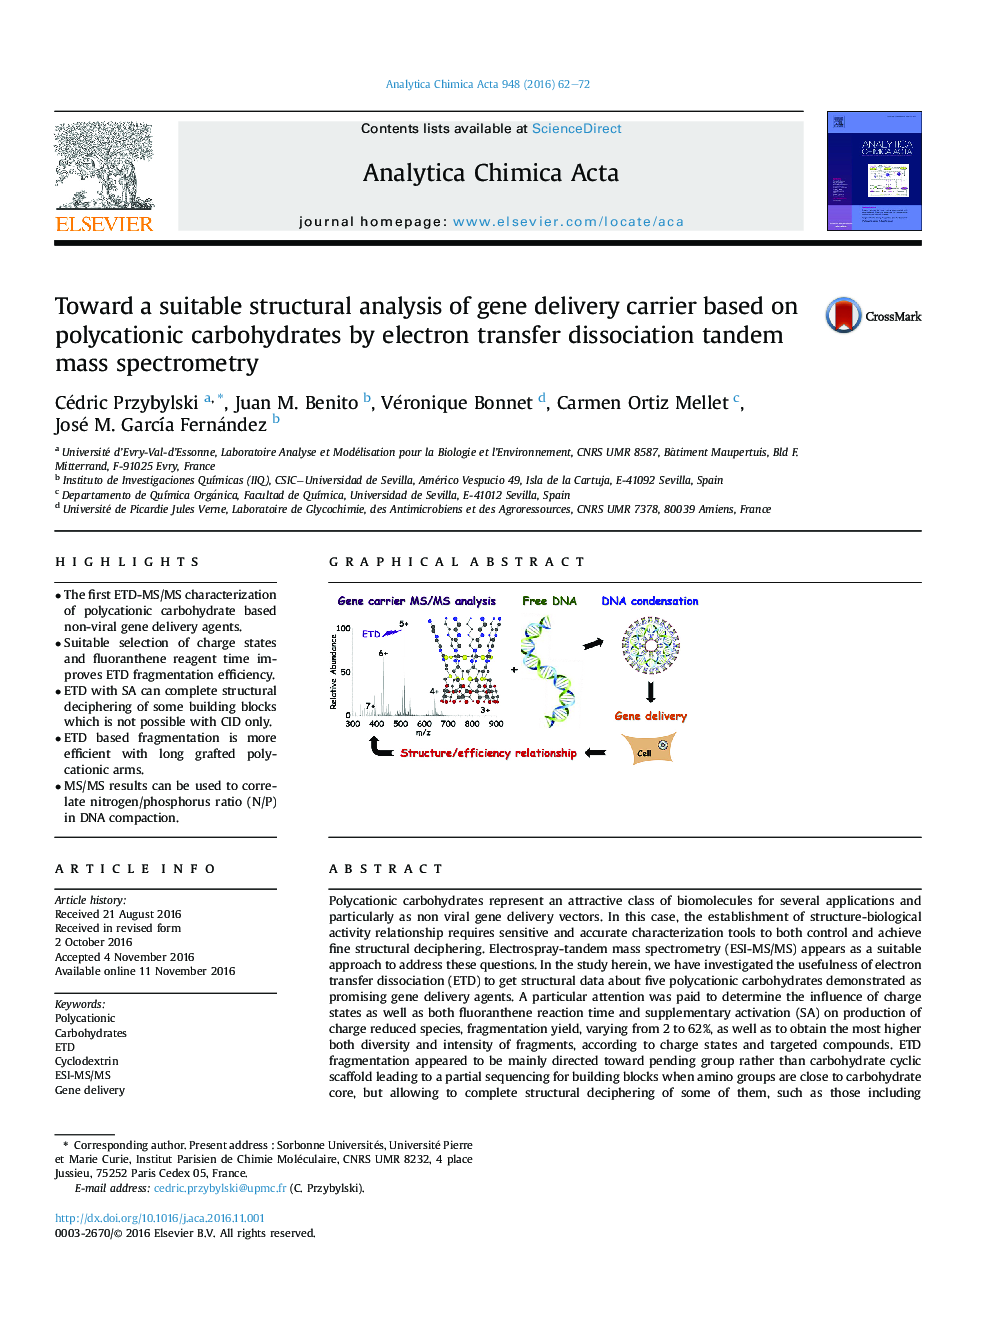 به سوی تجزیه و تحلیل ساختاری مناسب از حامل های تحویل ژن بر اساس کربوهیدرات های پلی کاتیونی با استفاده از طیف سنجی توده ای 